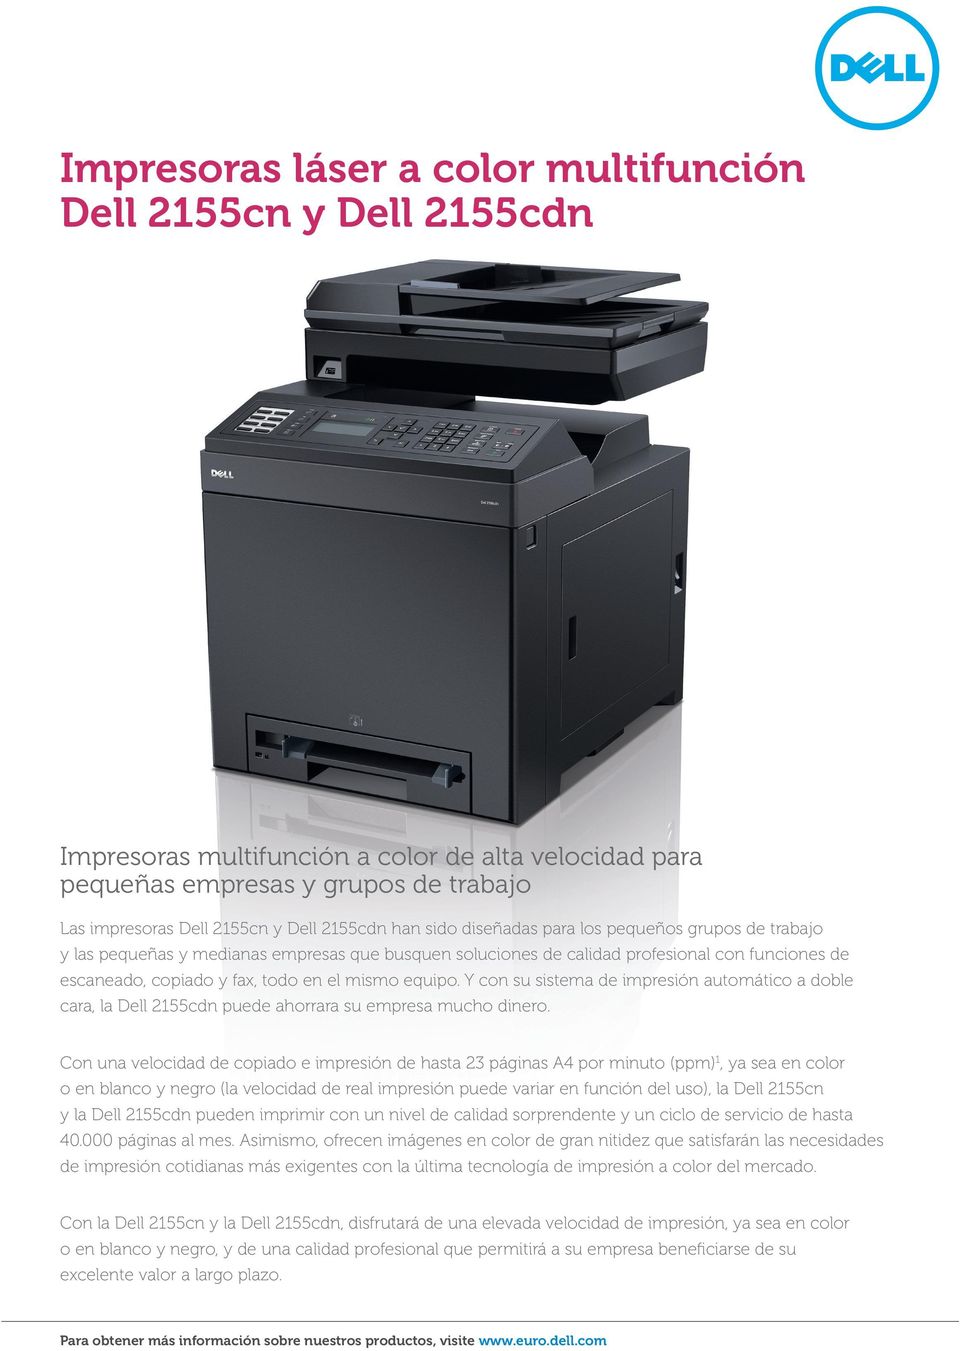 Y con su sistema de impresión automático a doble cara, la Dell 2155cdn puede ahorrara su empresa mucho dinero.